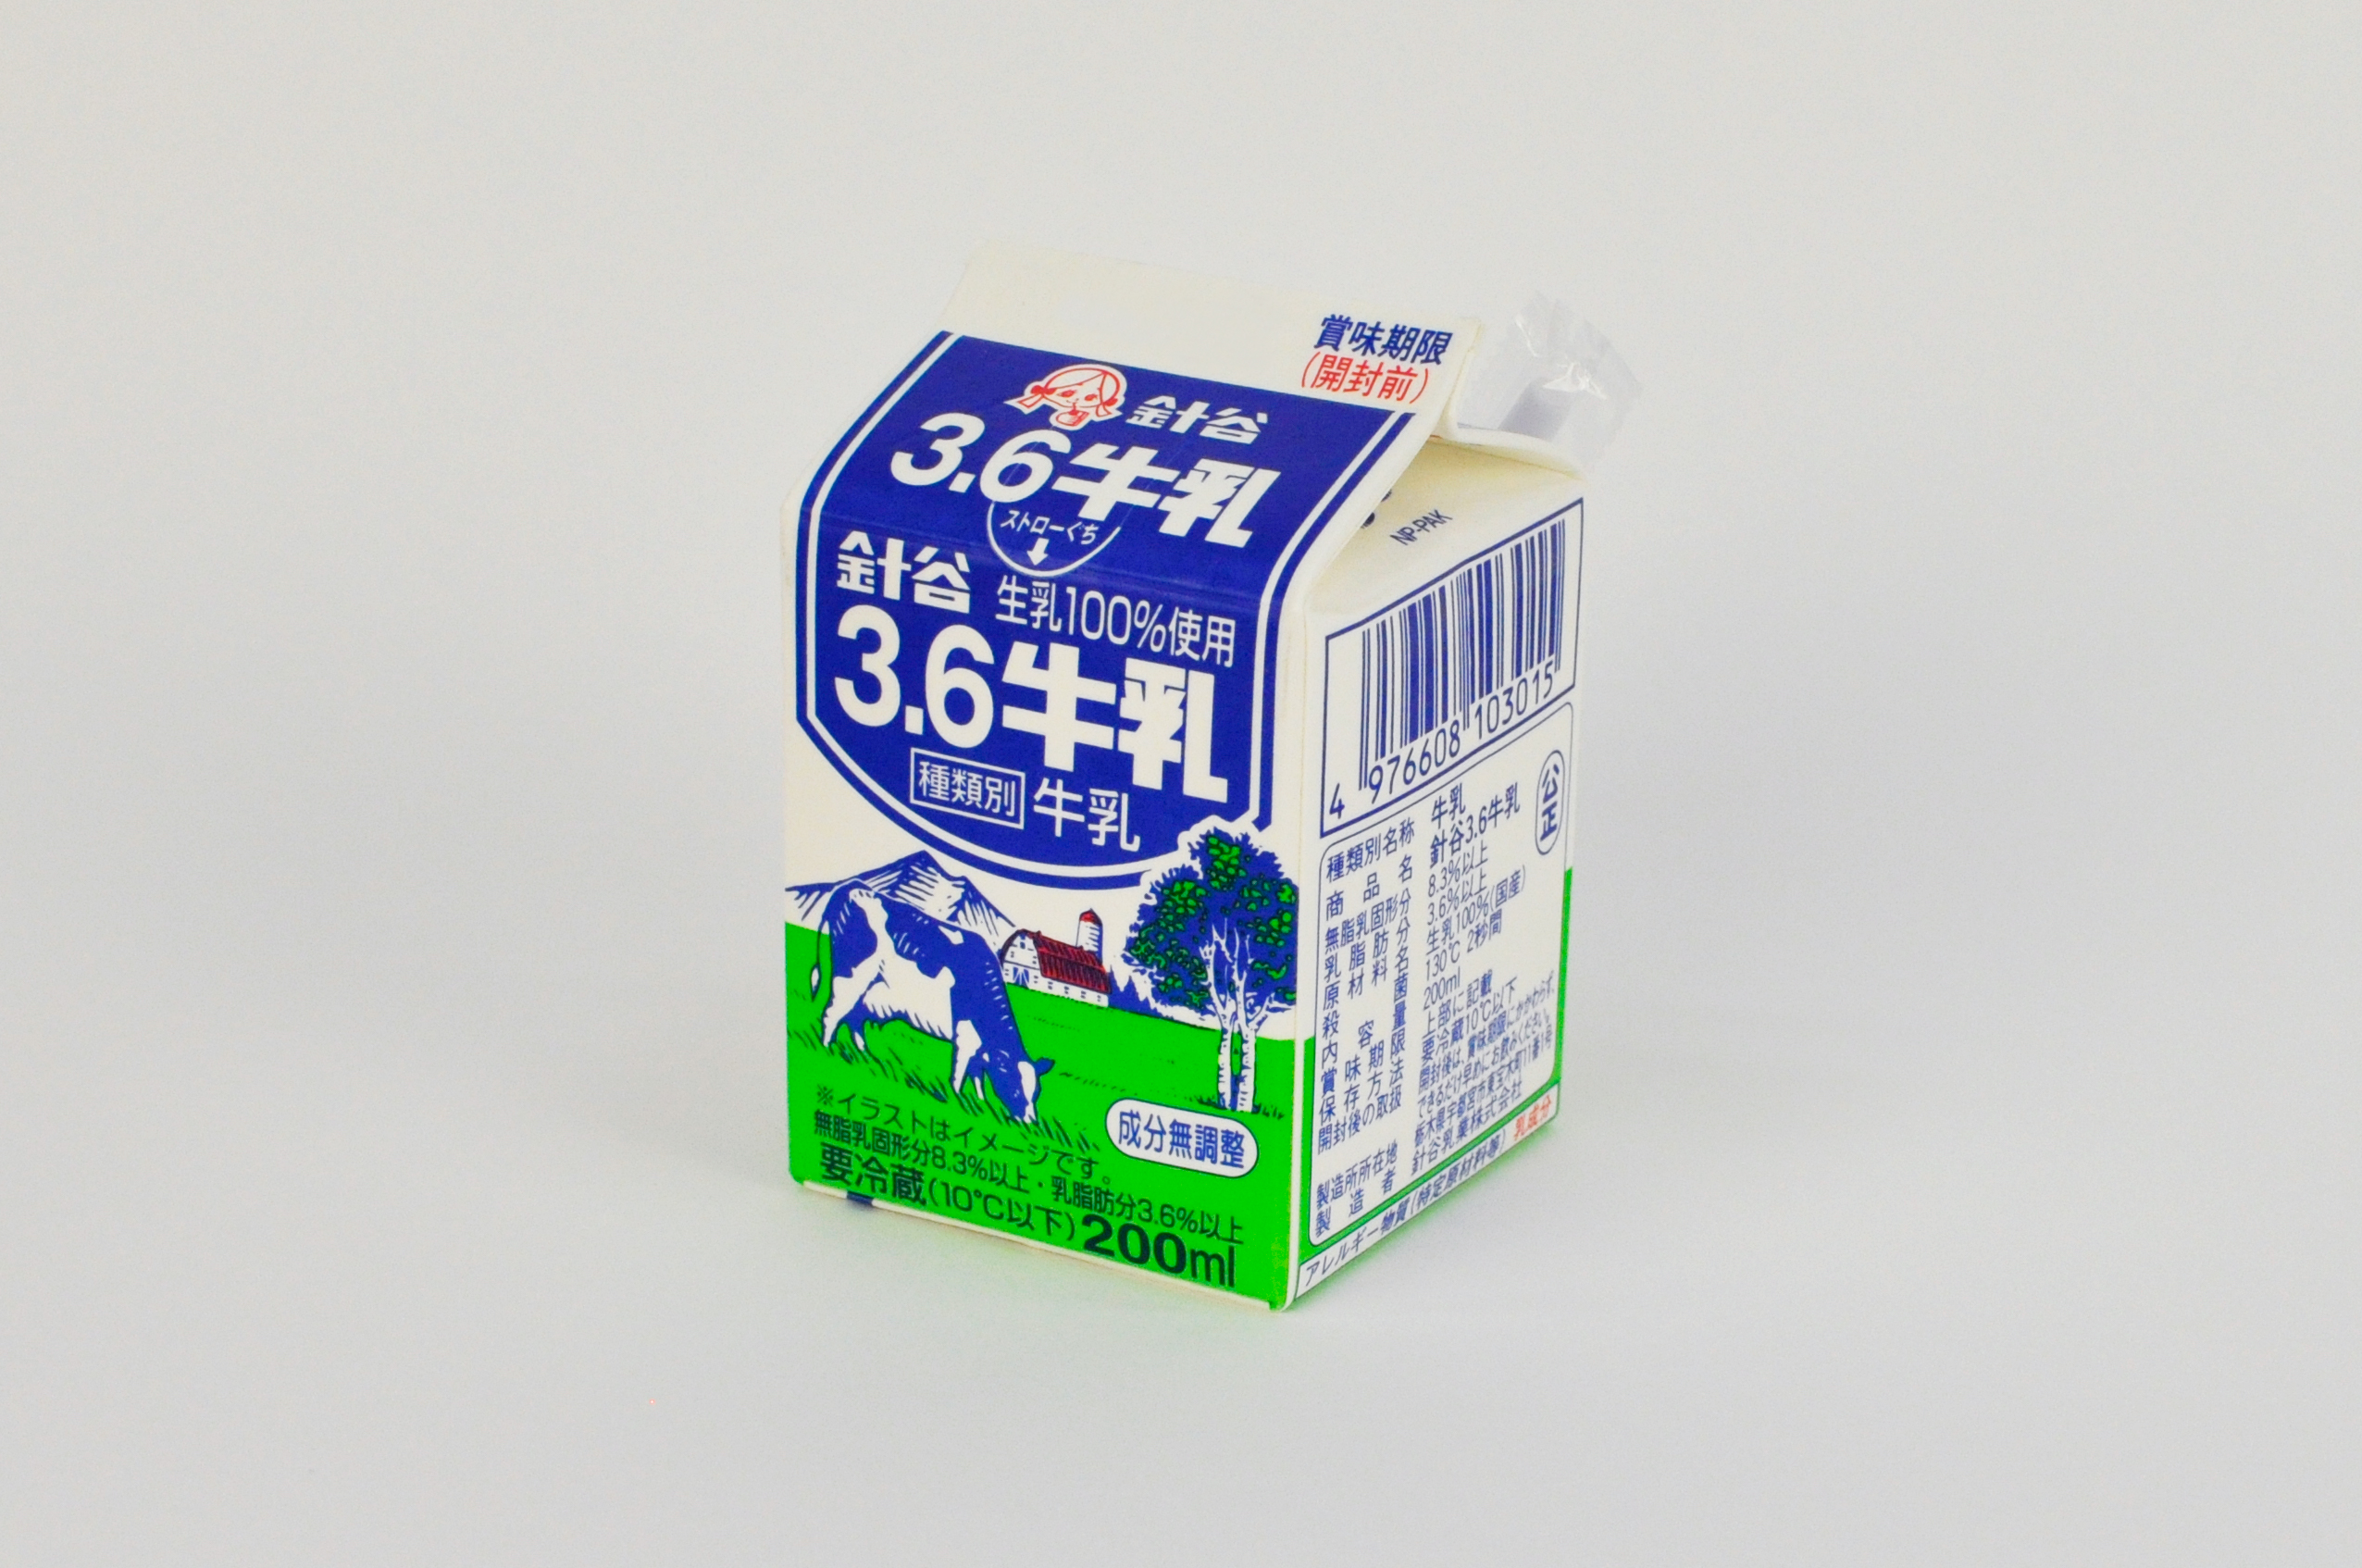 تويتر カートンラボ 日本製紙 公式 على تويتر 針谷乳業 Harigai Milk さんの 針谷 3 6牛乳 栃木県 内の学校給食でおなじみの牛乳パックです 鮮やかな３色を使ったシンプルで可愛いデザインの牛乳パックです T Co Kth6hmelhh